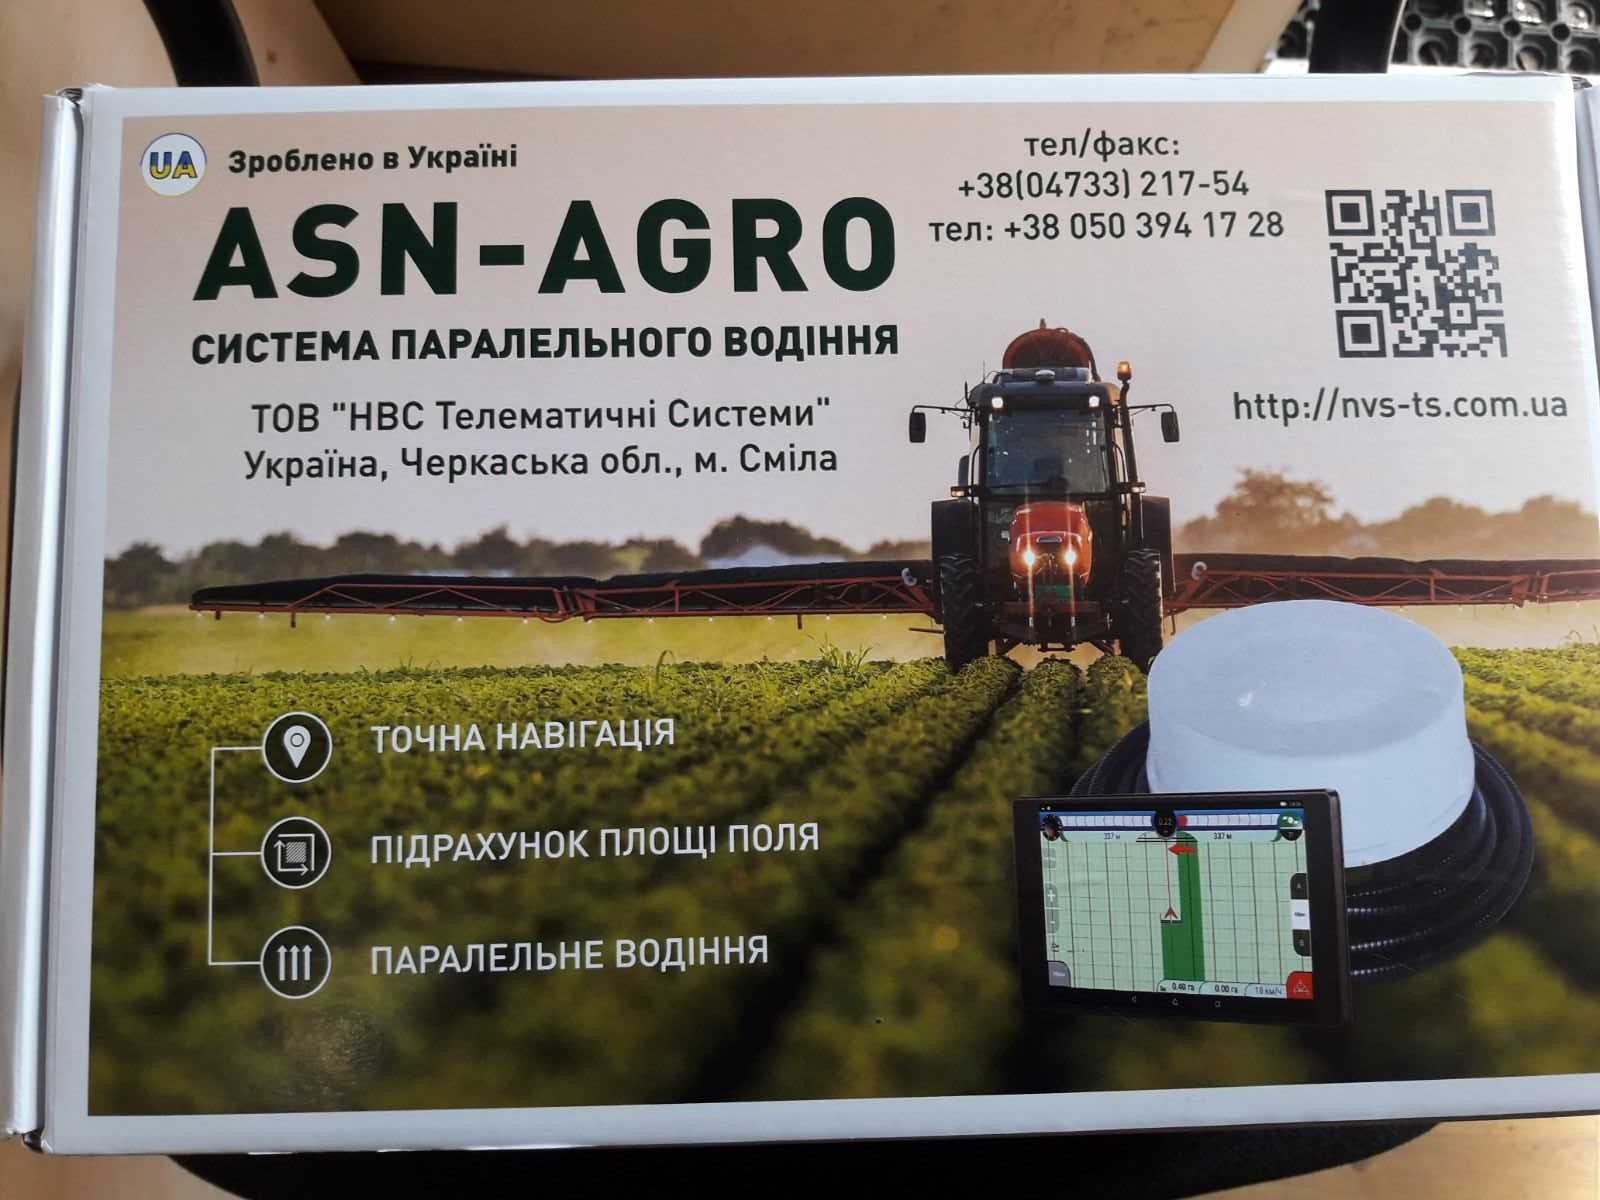 Продам Агро-навігацію  ASN-AGRO